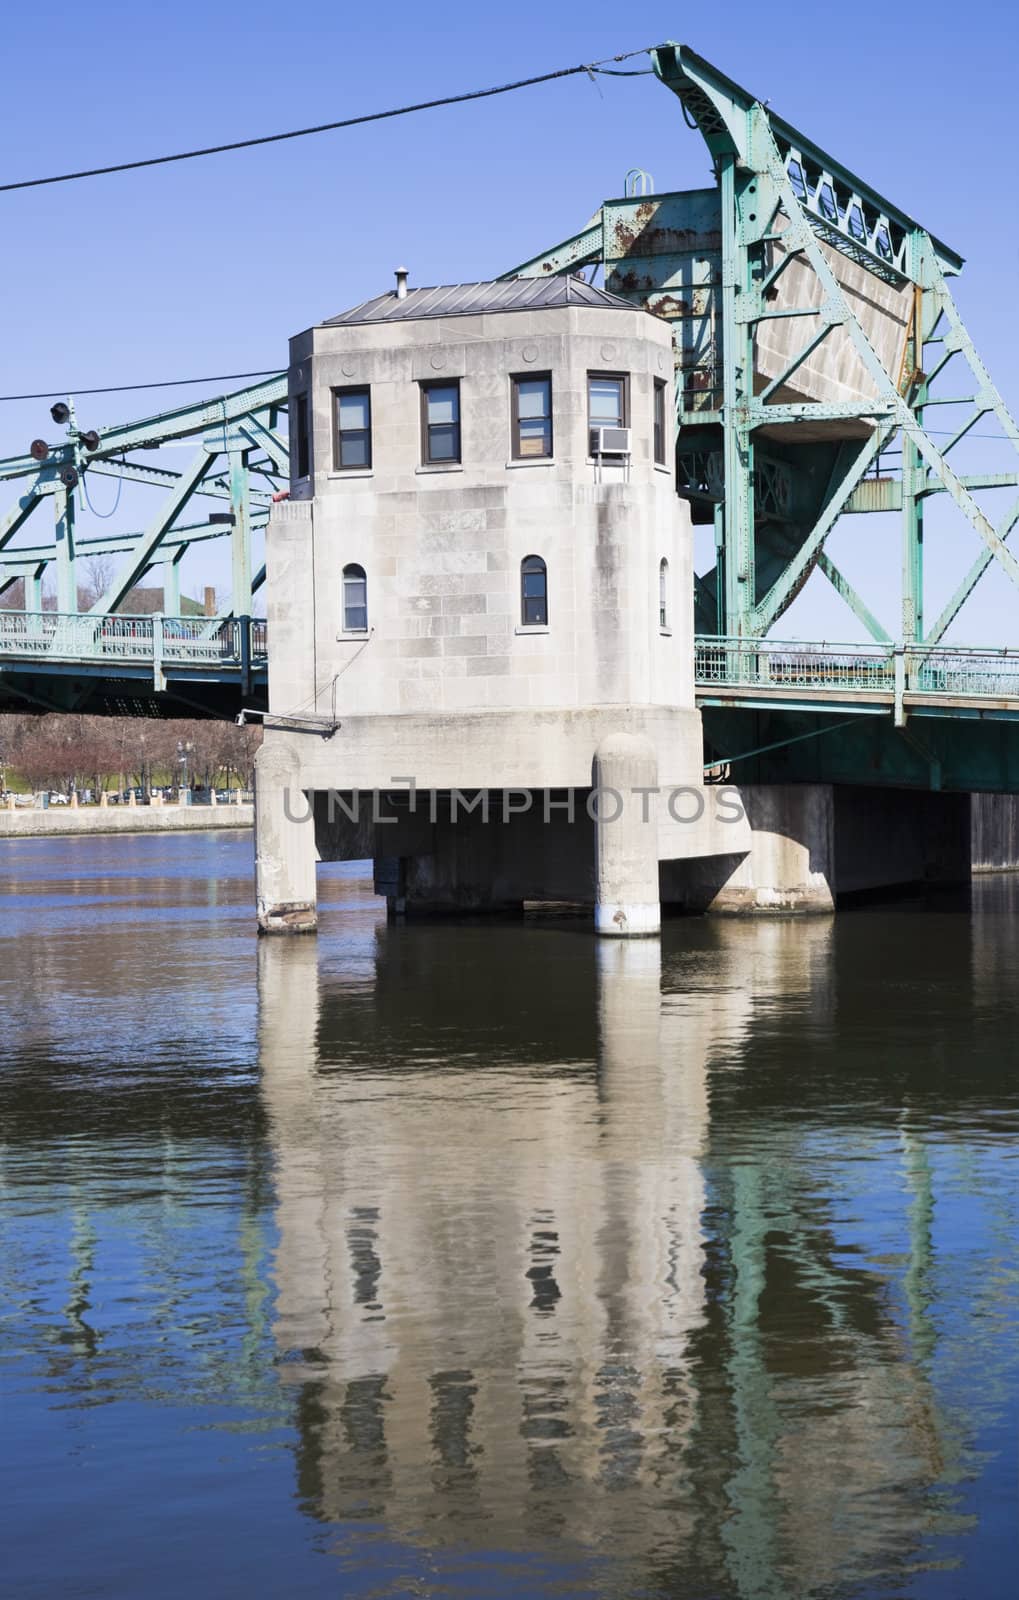 Details of Historic bridge in Joliet  by benkrut